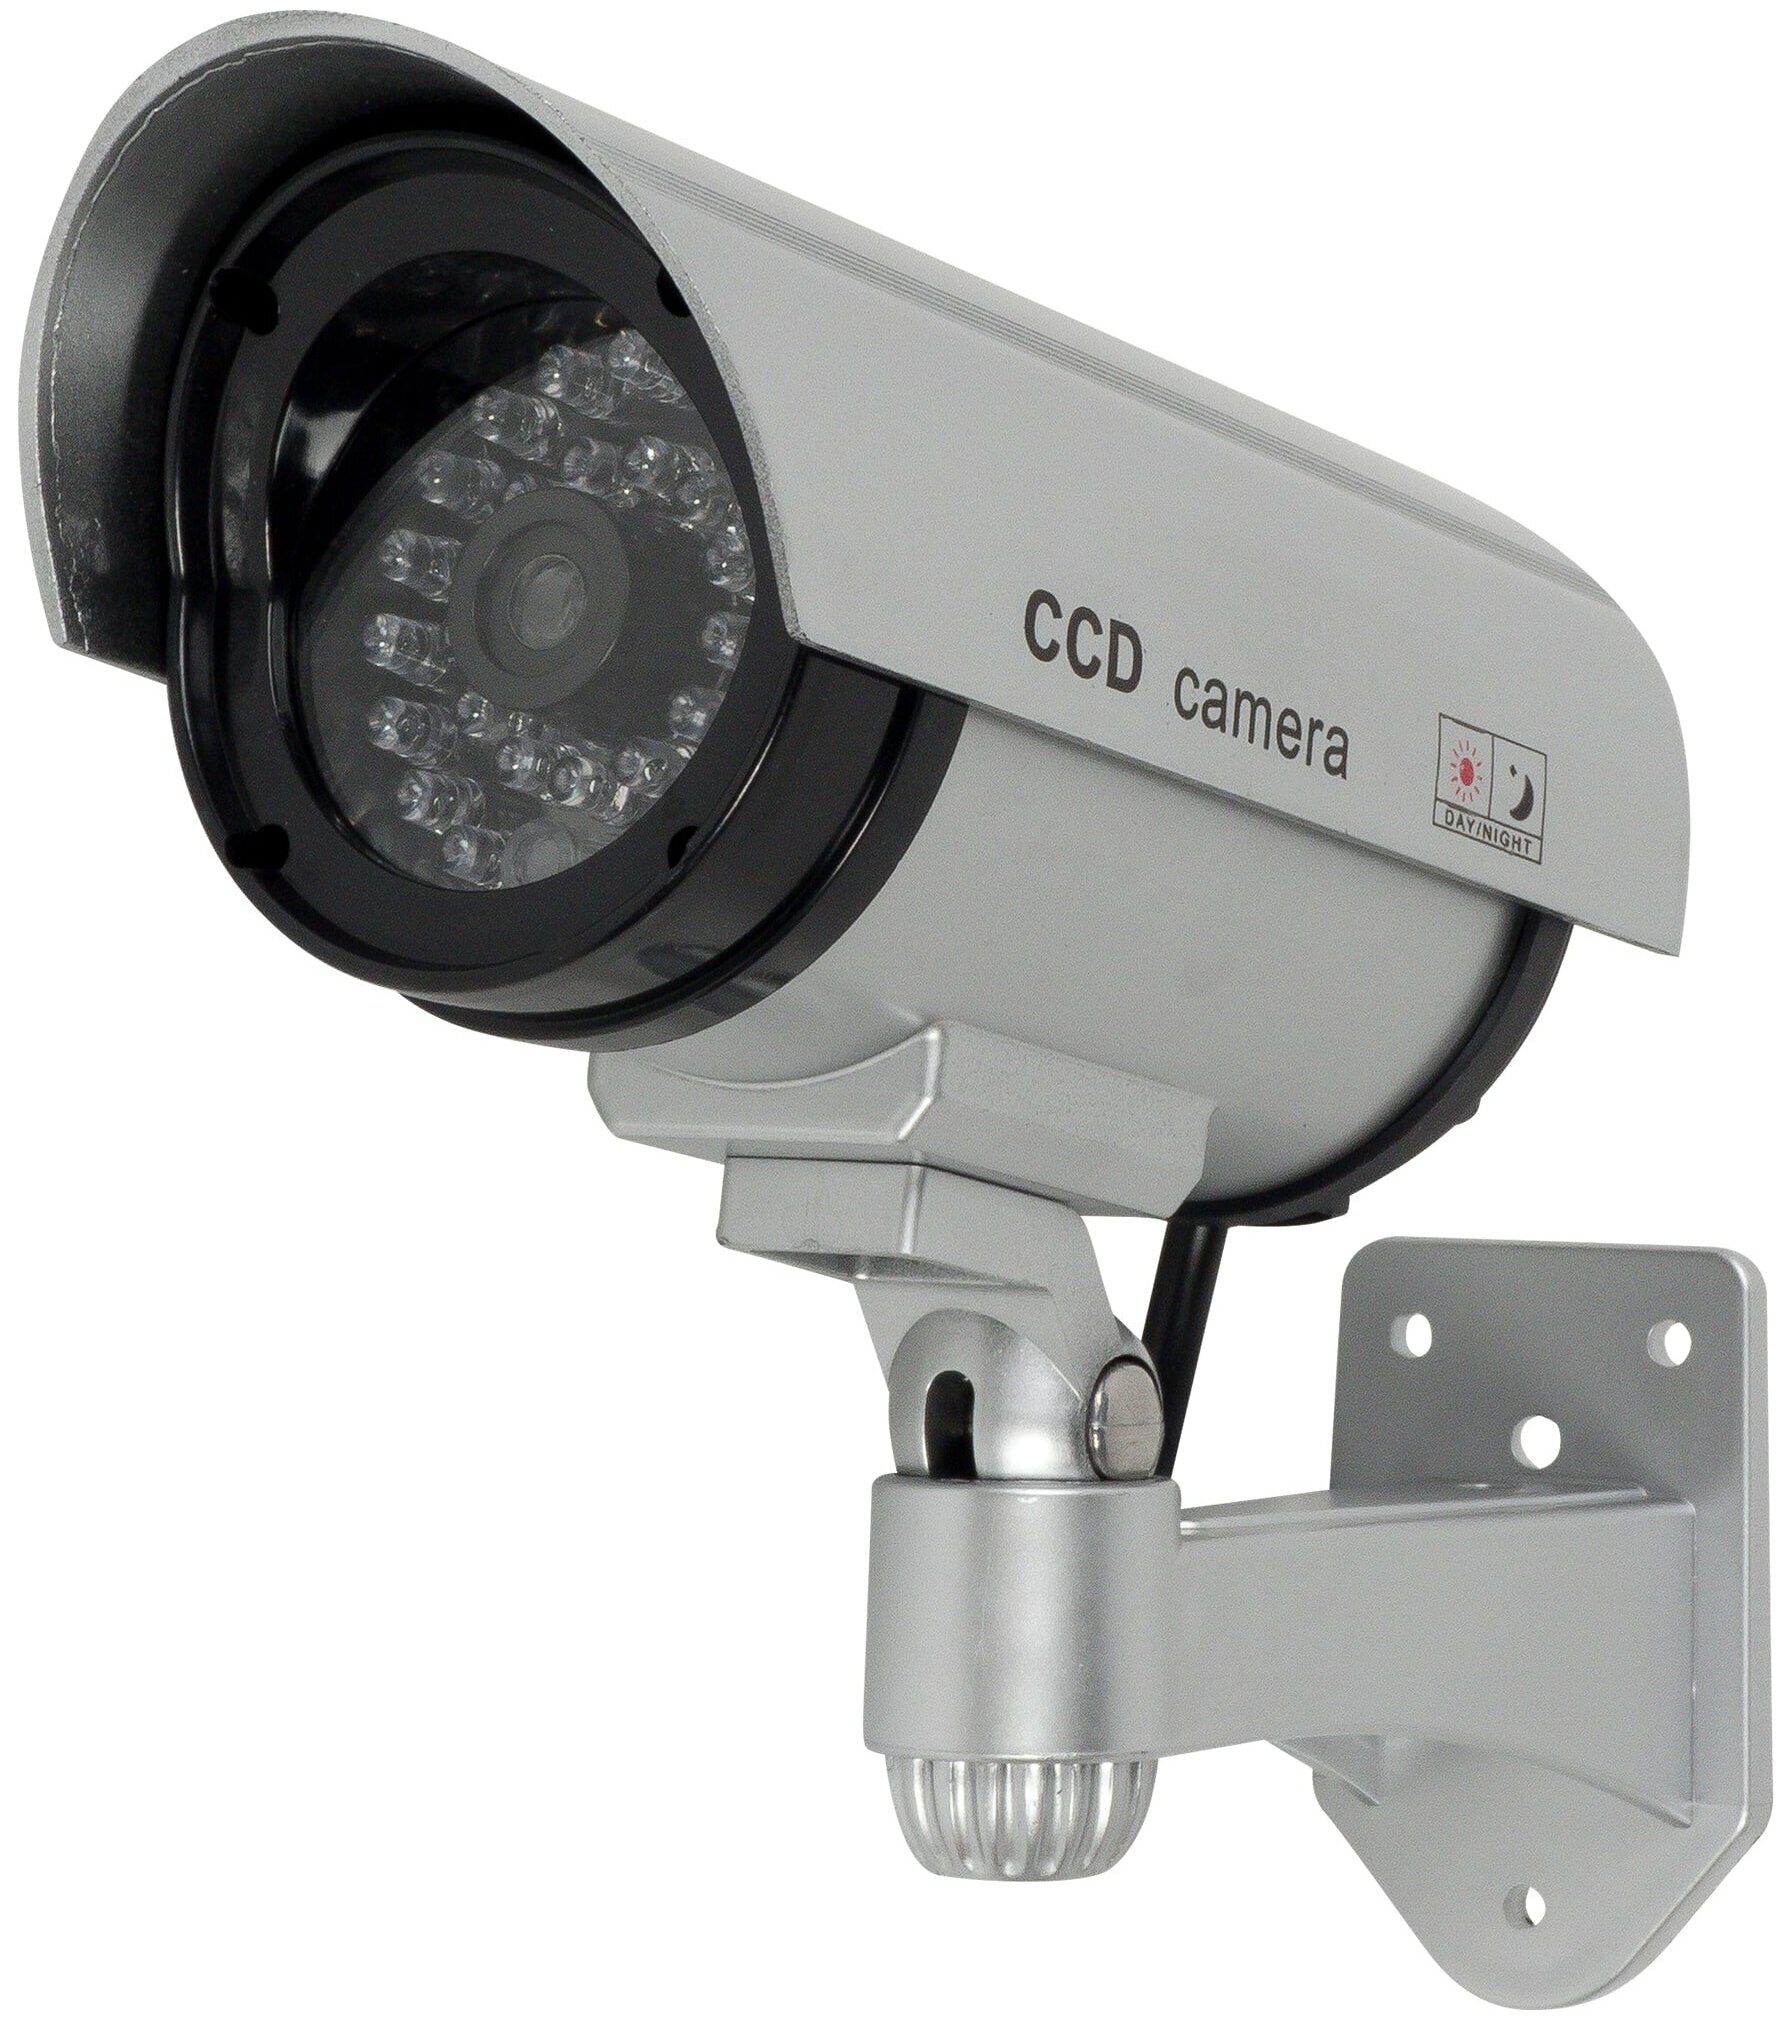 Муляж камеры видеонаблюдения дома с мигающим красным светодиодом муляж камеры видеонаблюдения speedroll 2600a